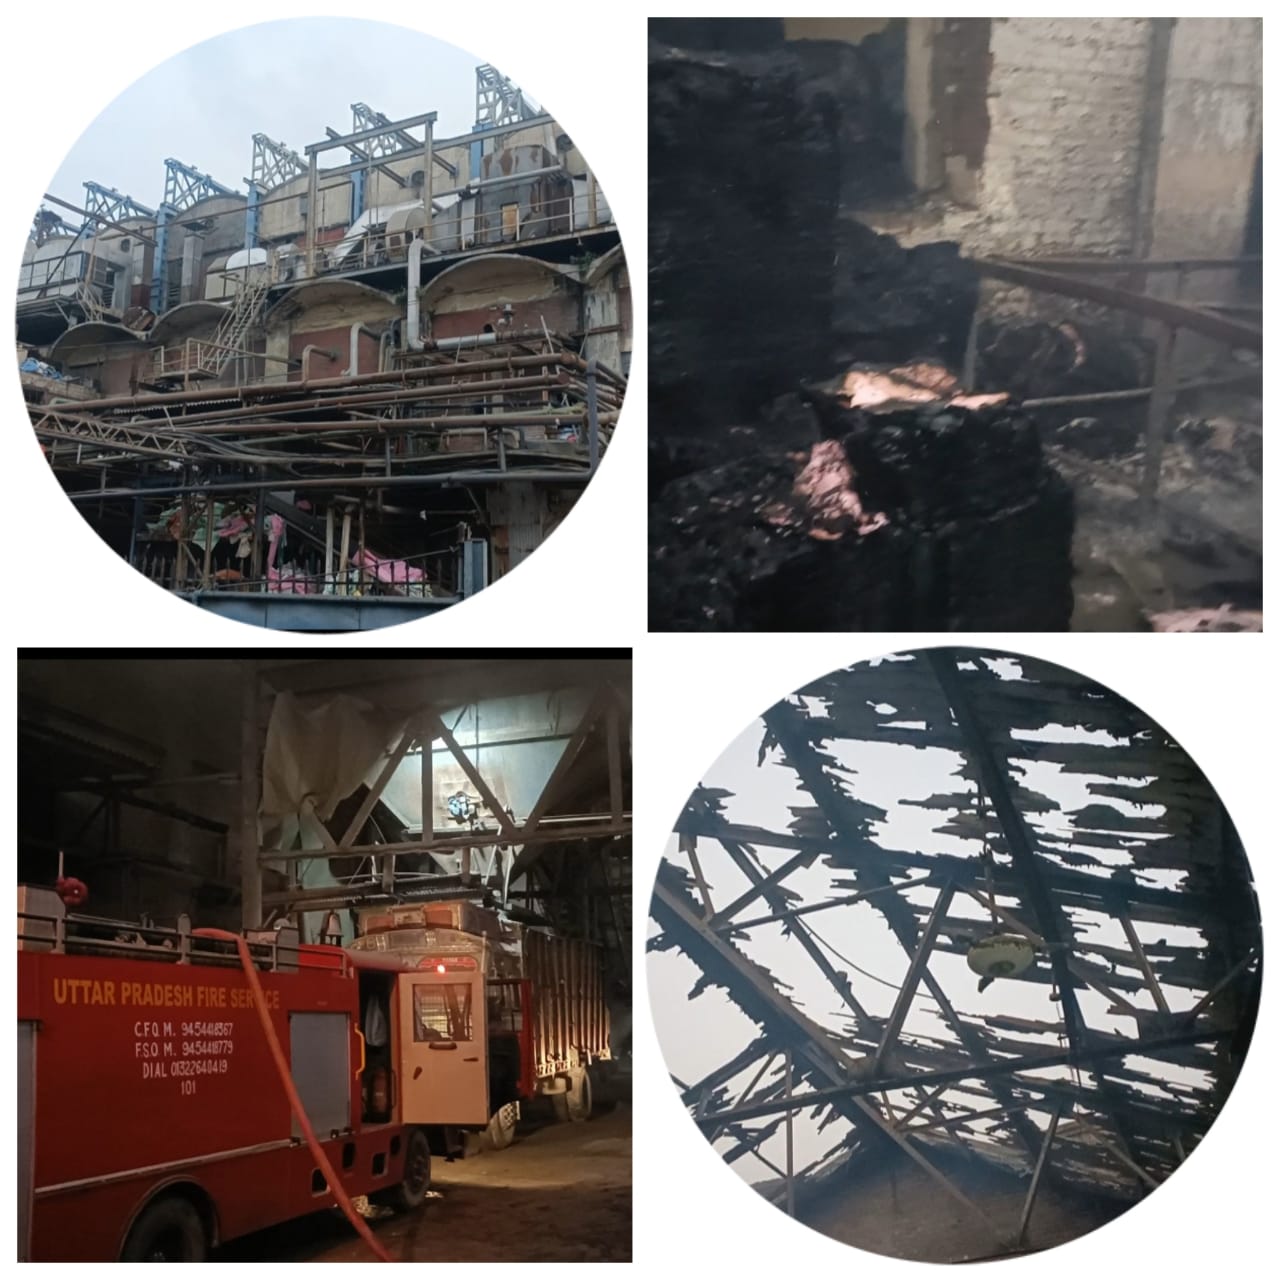 स्टार पेपर मिल में अचानक लगी आग में हुई घोर लापरवाही के चलते उत्तर प्रदेश शासन द्वारा CFO तेजवीर तत्काल सहारनपुर से औरैया भेजे गए